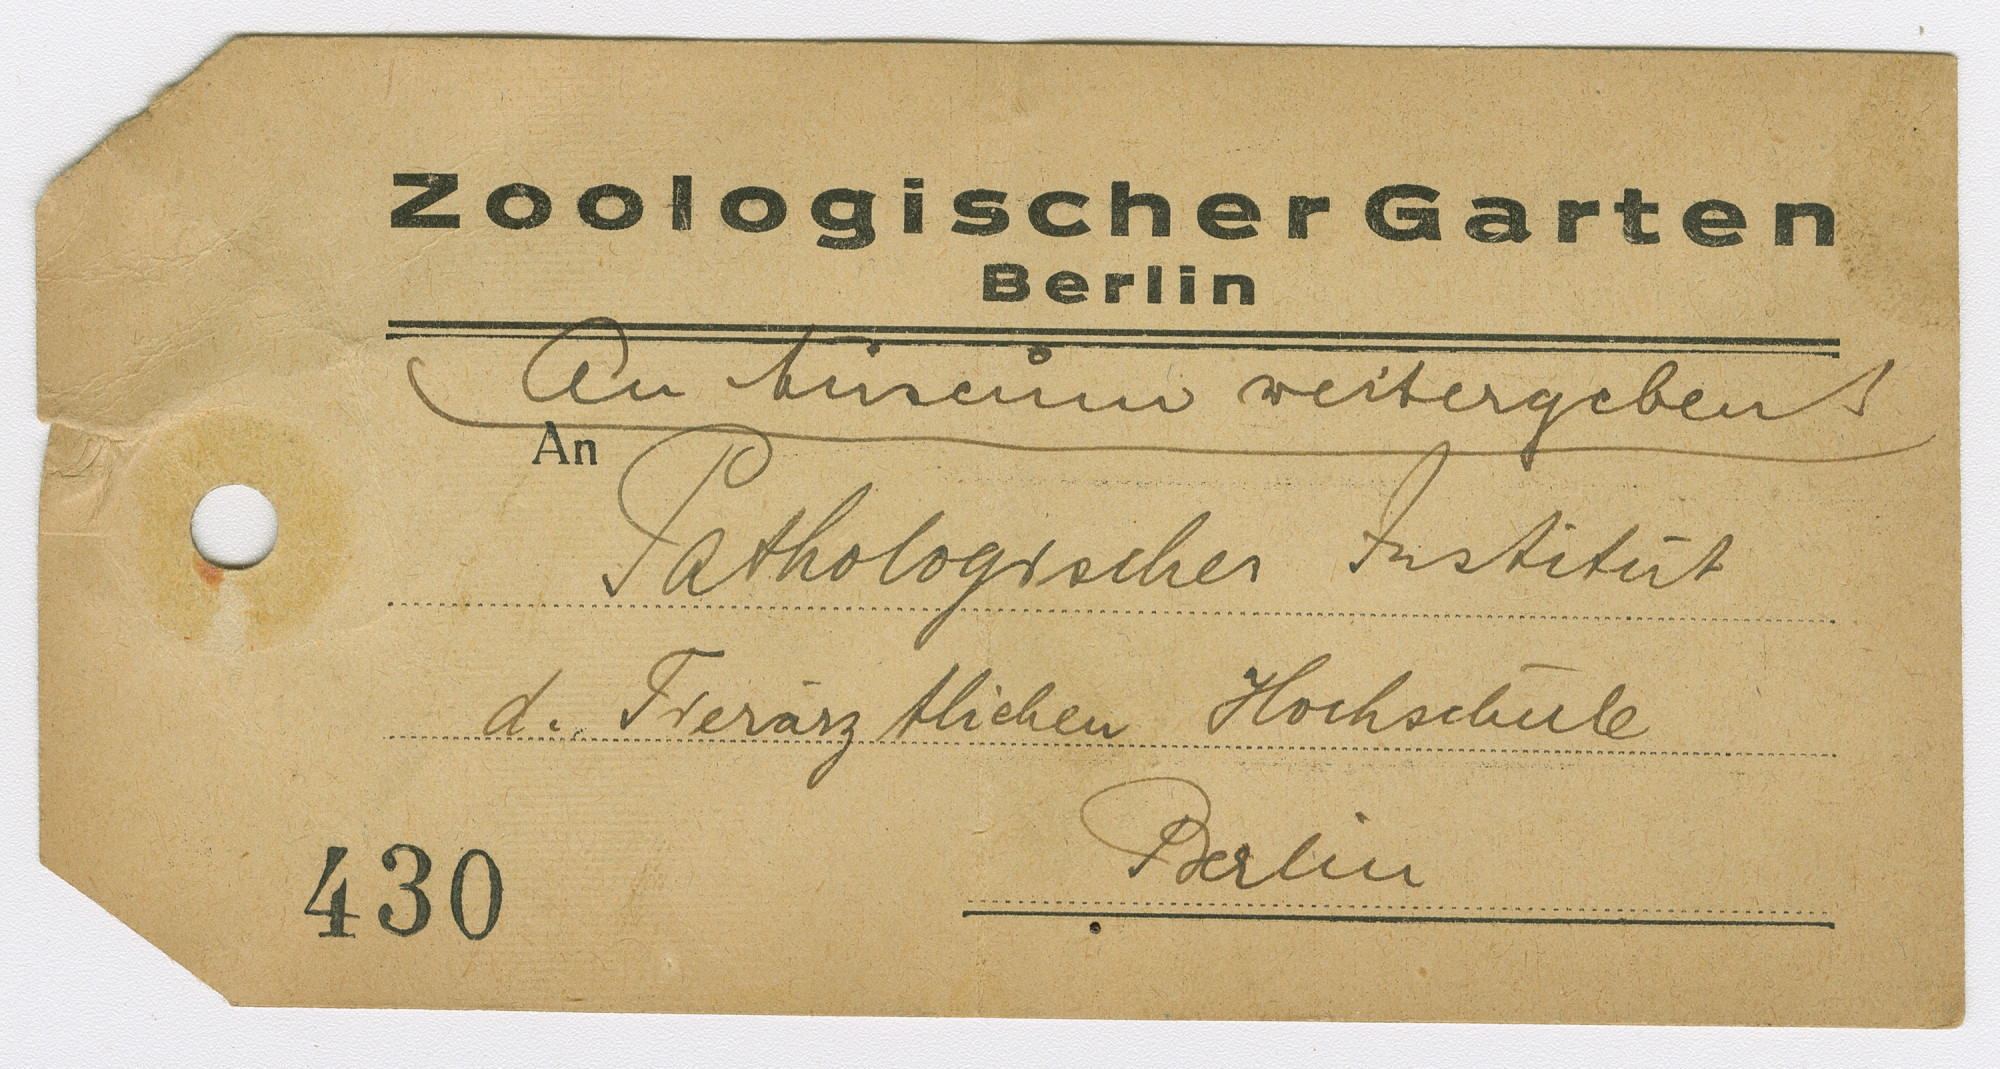 Vergilbte, gelochte Papierkarte mit Vordruck oben: Zoologischer Garten Berlin. Unten links: 430. Handschriftlich: An Museum weitergeben / Pathologisches Institut der _______